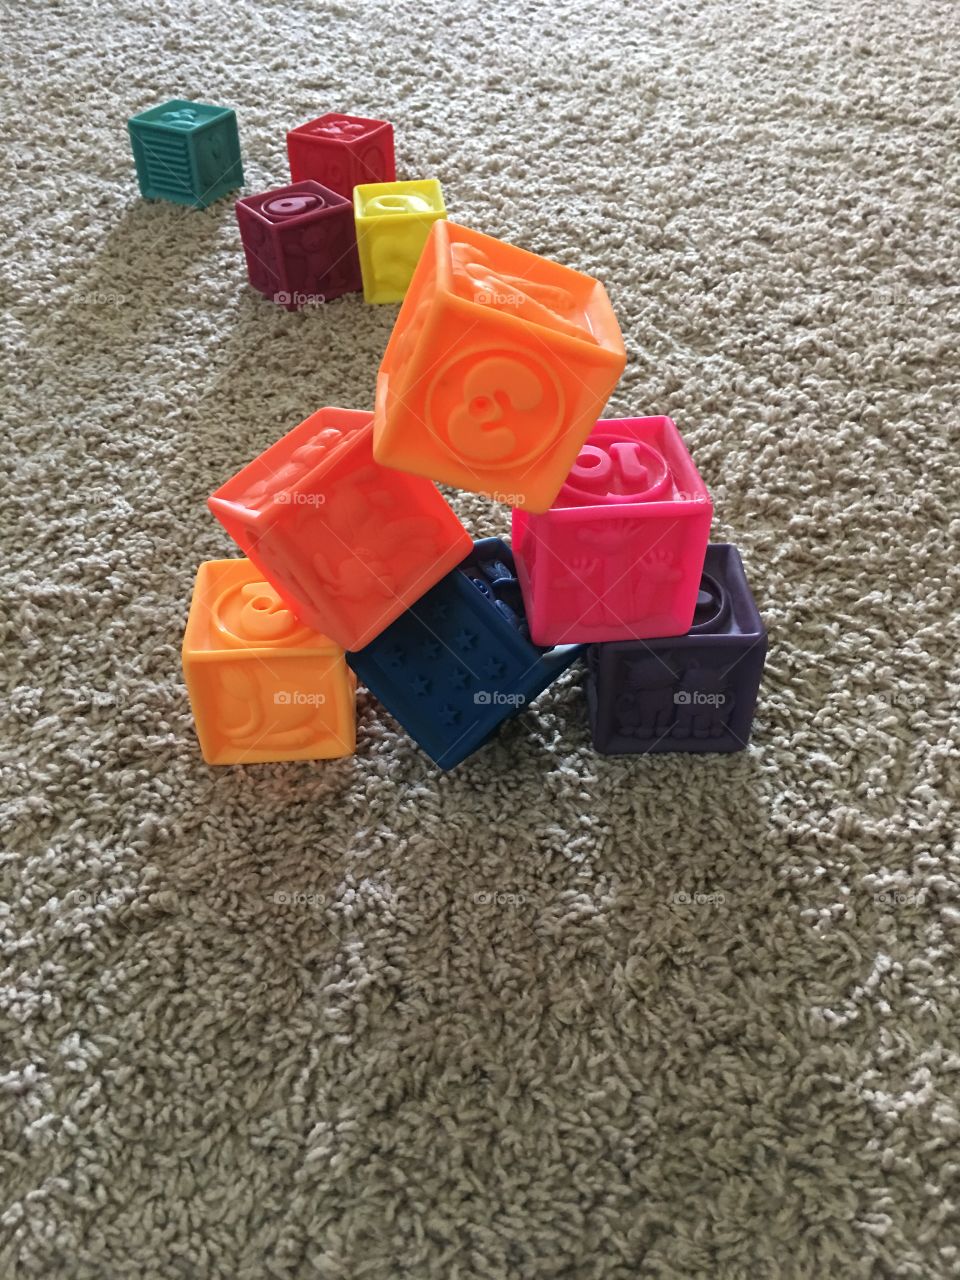 Fun with blocks